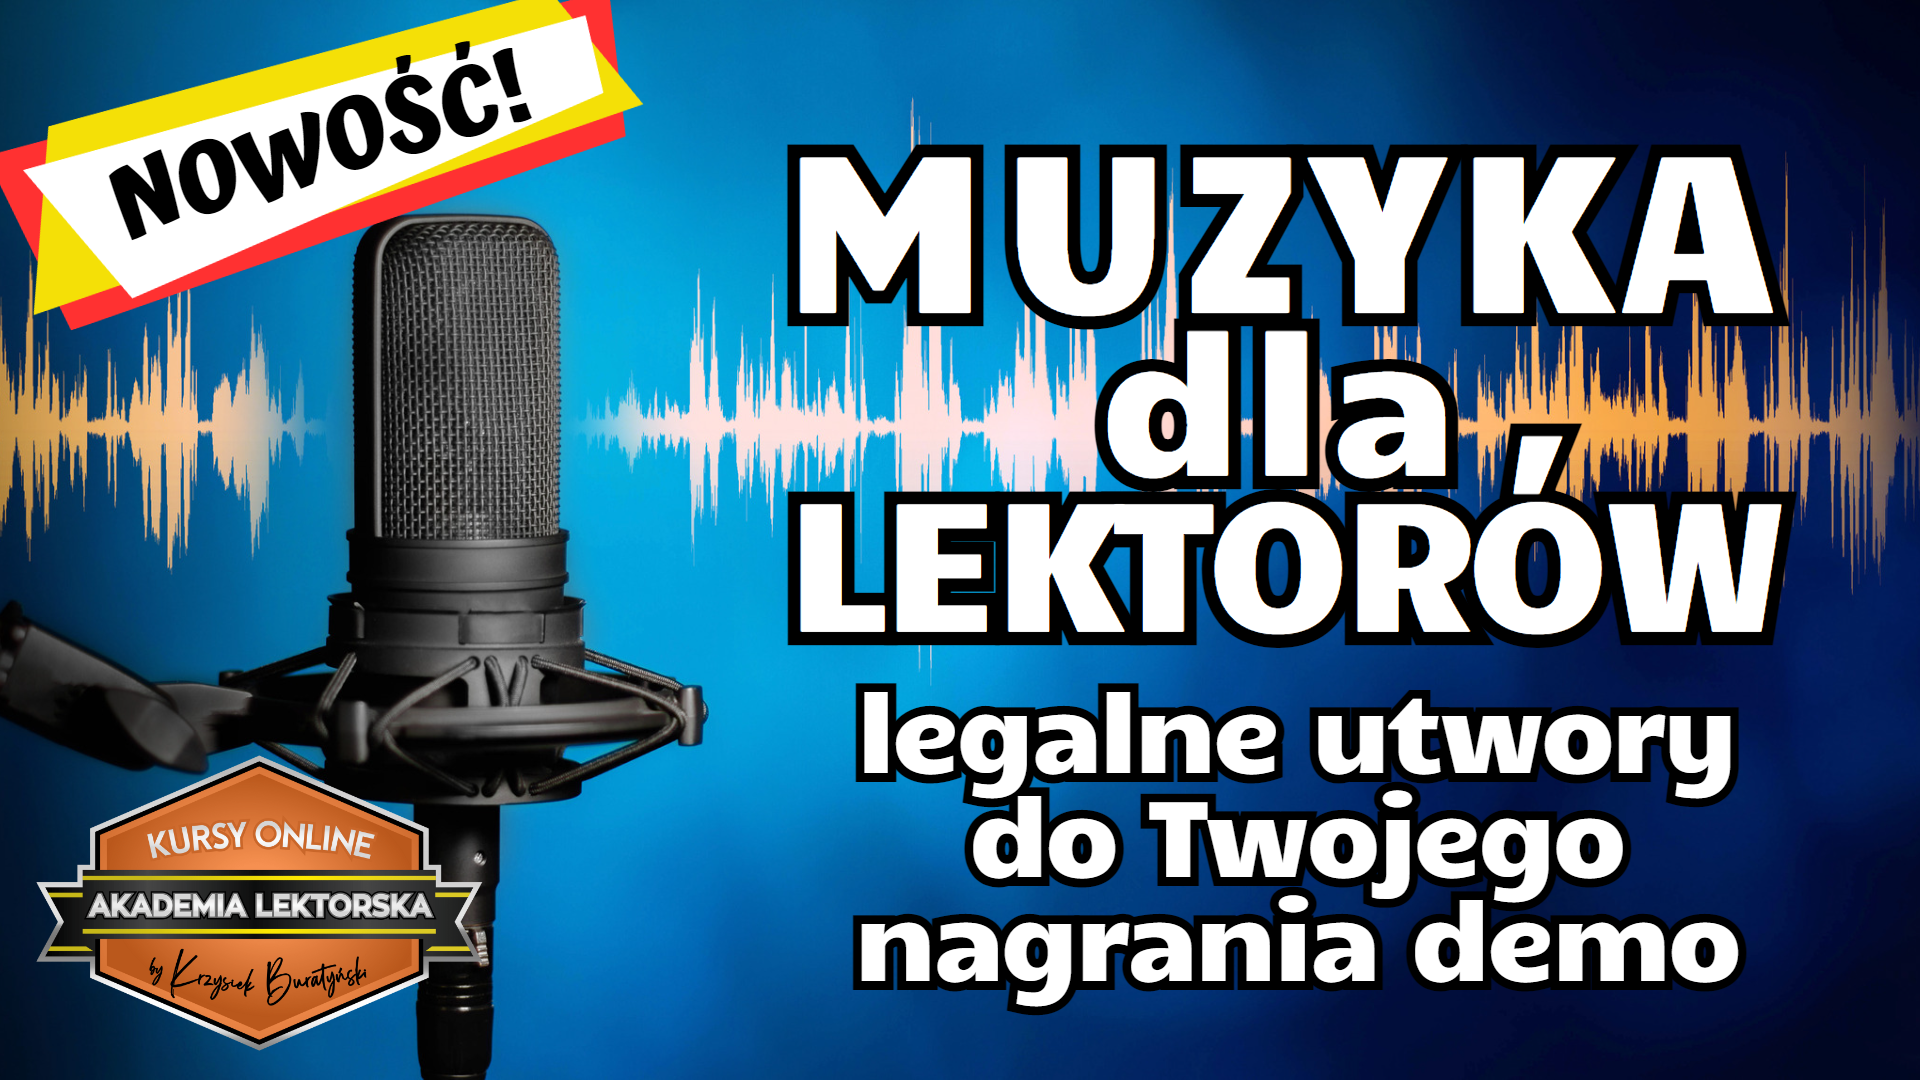 Muzyka dla Lektorów - pakiet 200 utworów do nagrań demo (WAV)